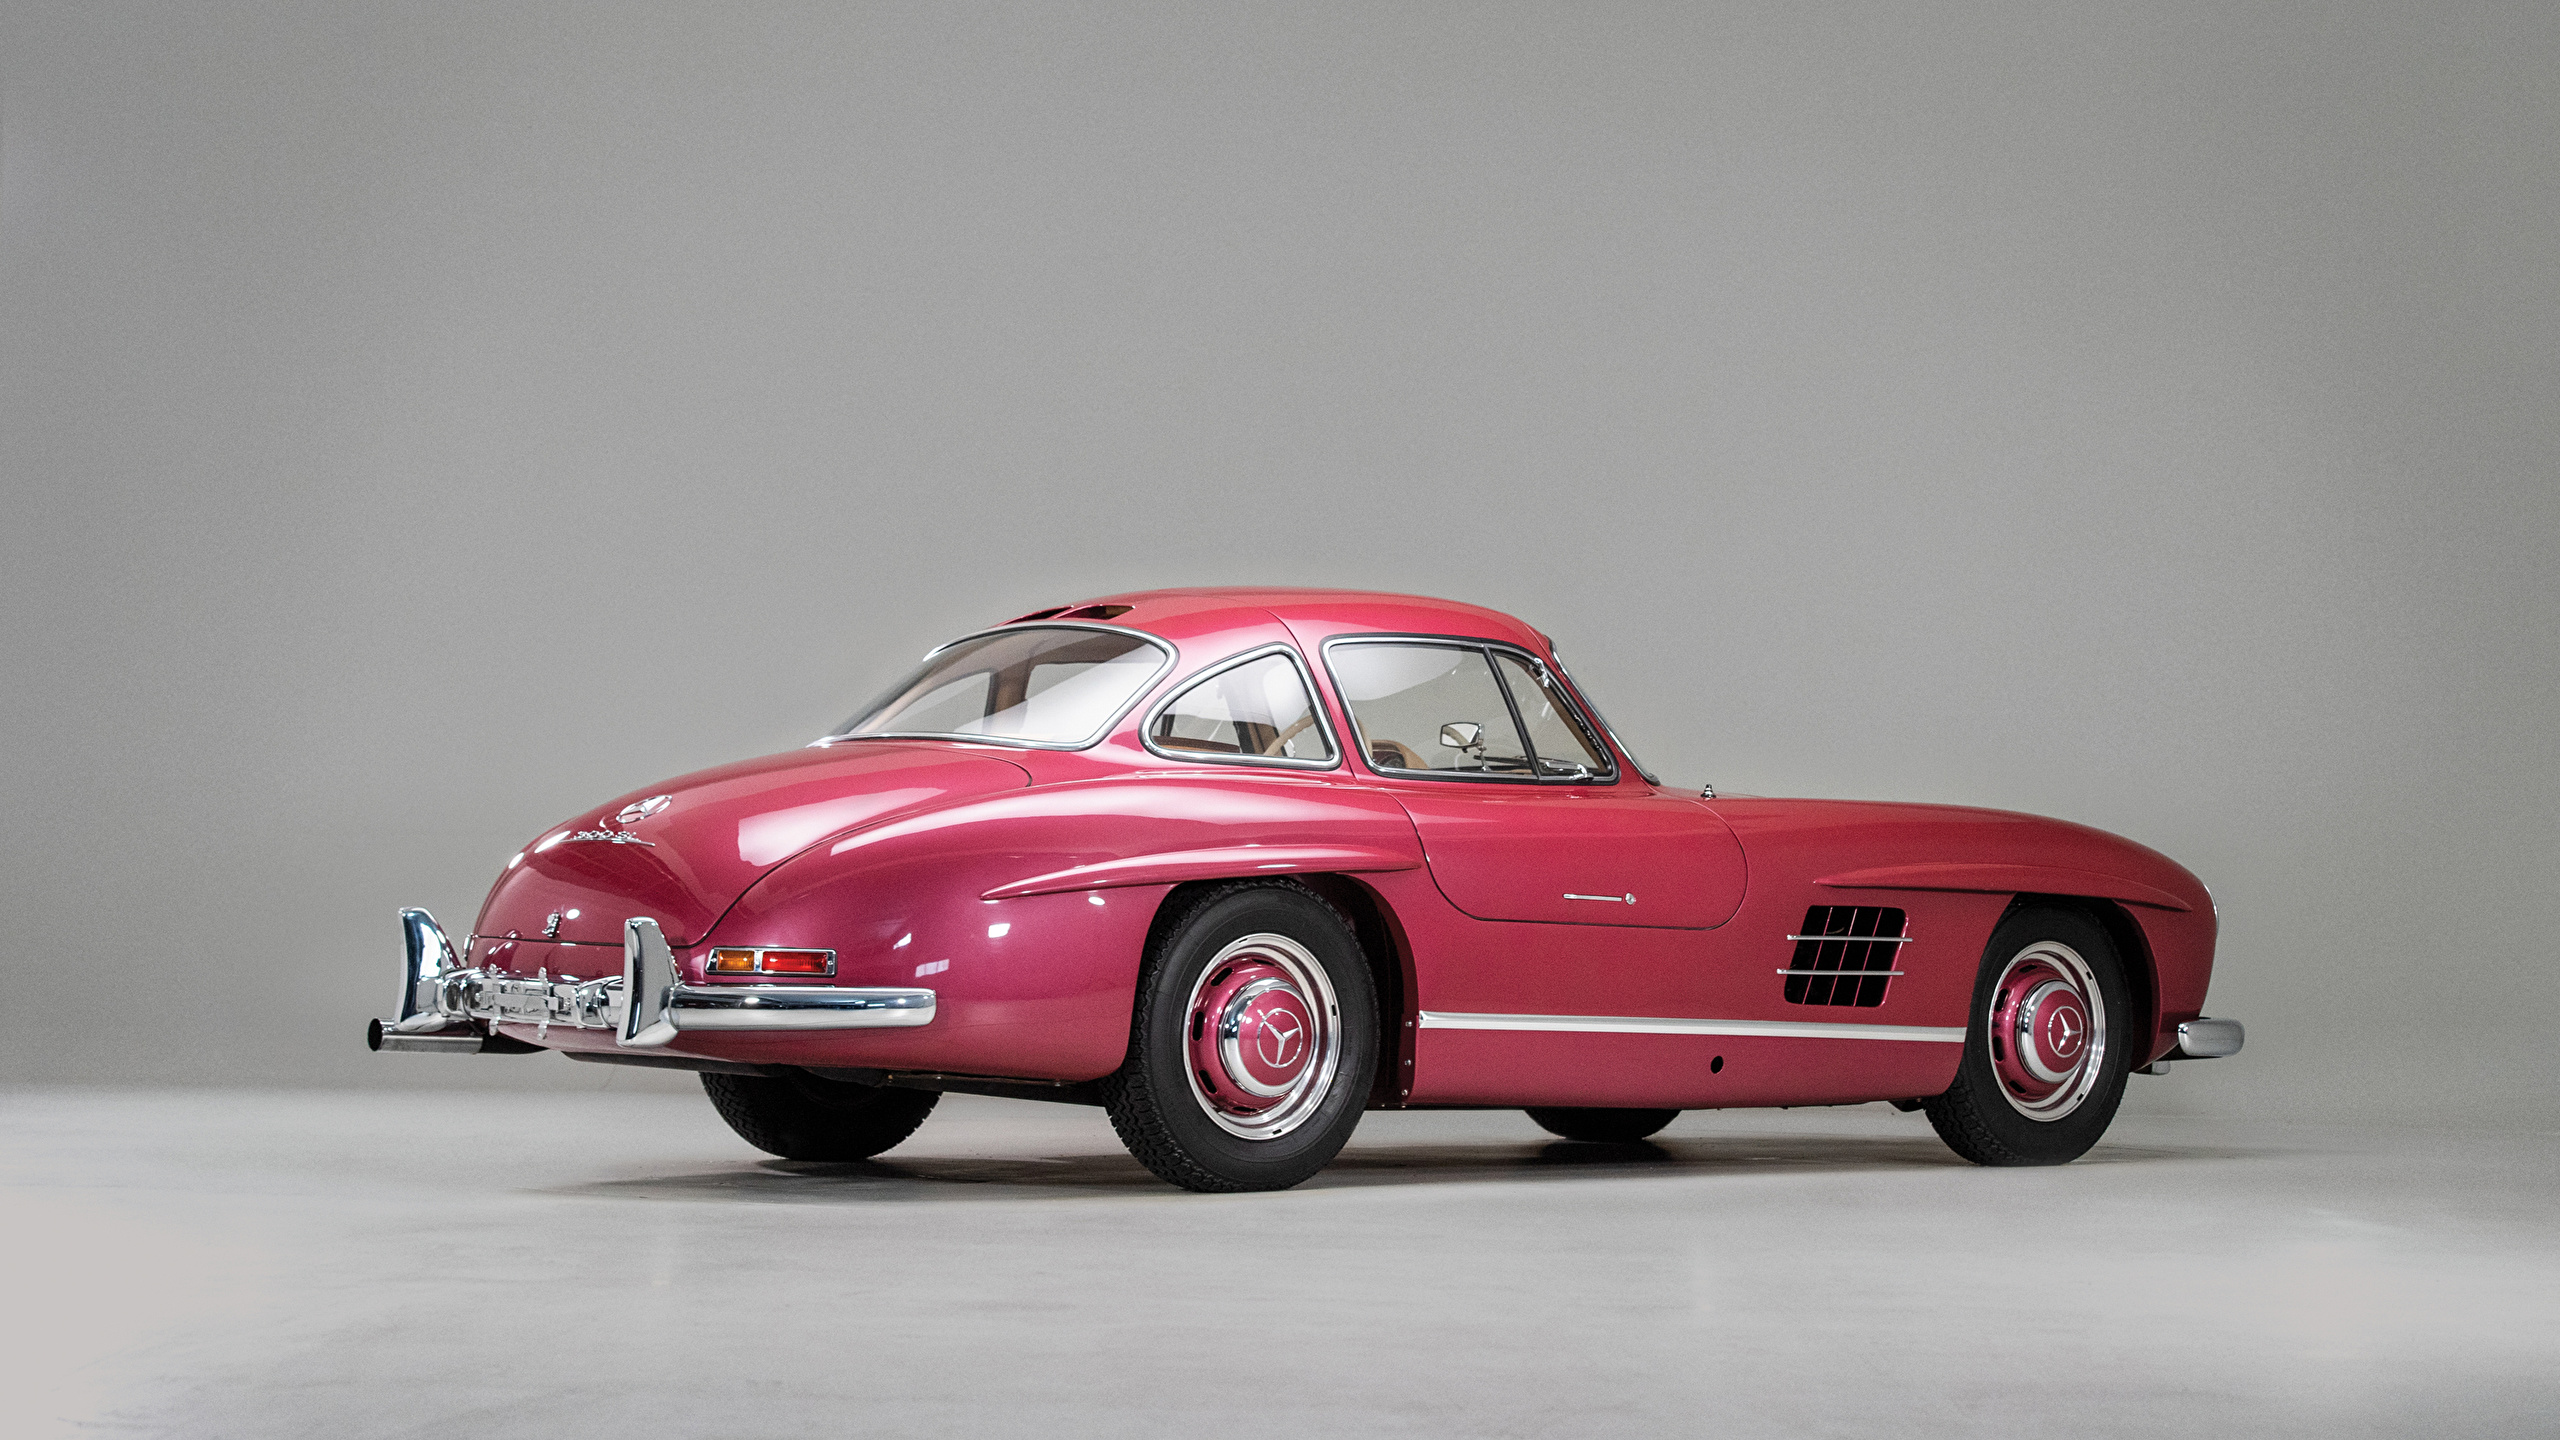 壁紙 2560x1440 メルセデス ベンツ レトロ 1956 300 Sl グレーの背景 ピンク メタリック塗 自動車 ダウンロード 写真